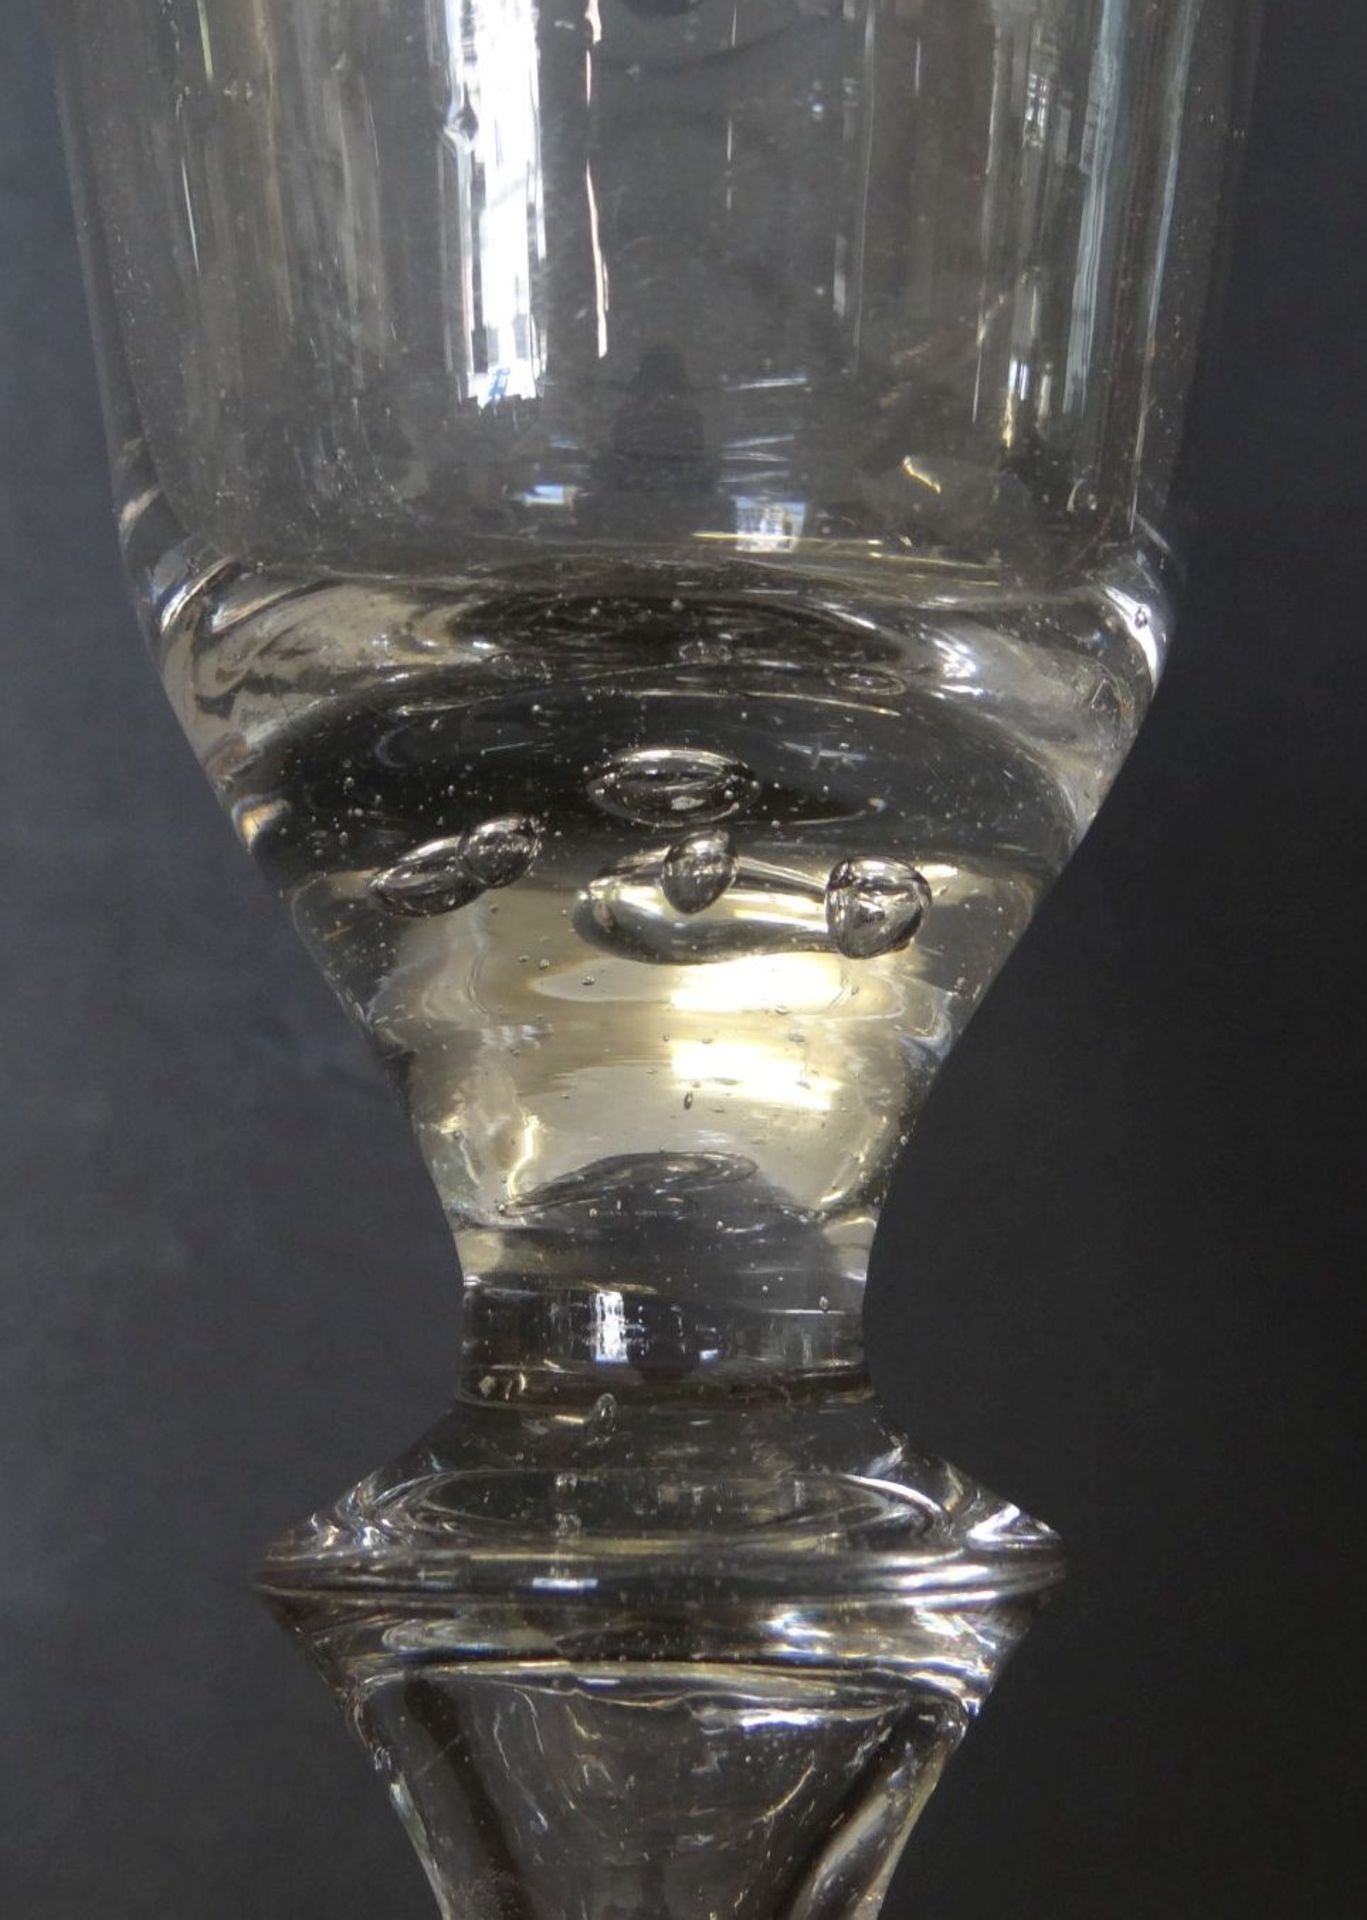 grossesw Barock-Weinglas, mit Luftblasen, H-18 cm, sammelwürdige Erhaltun - Bild 5 aus 6